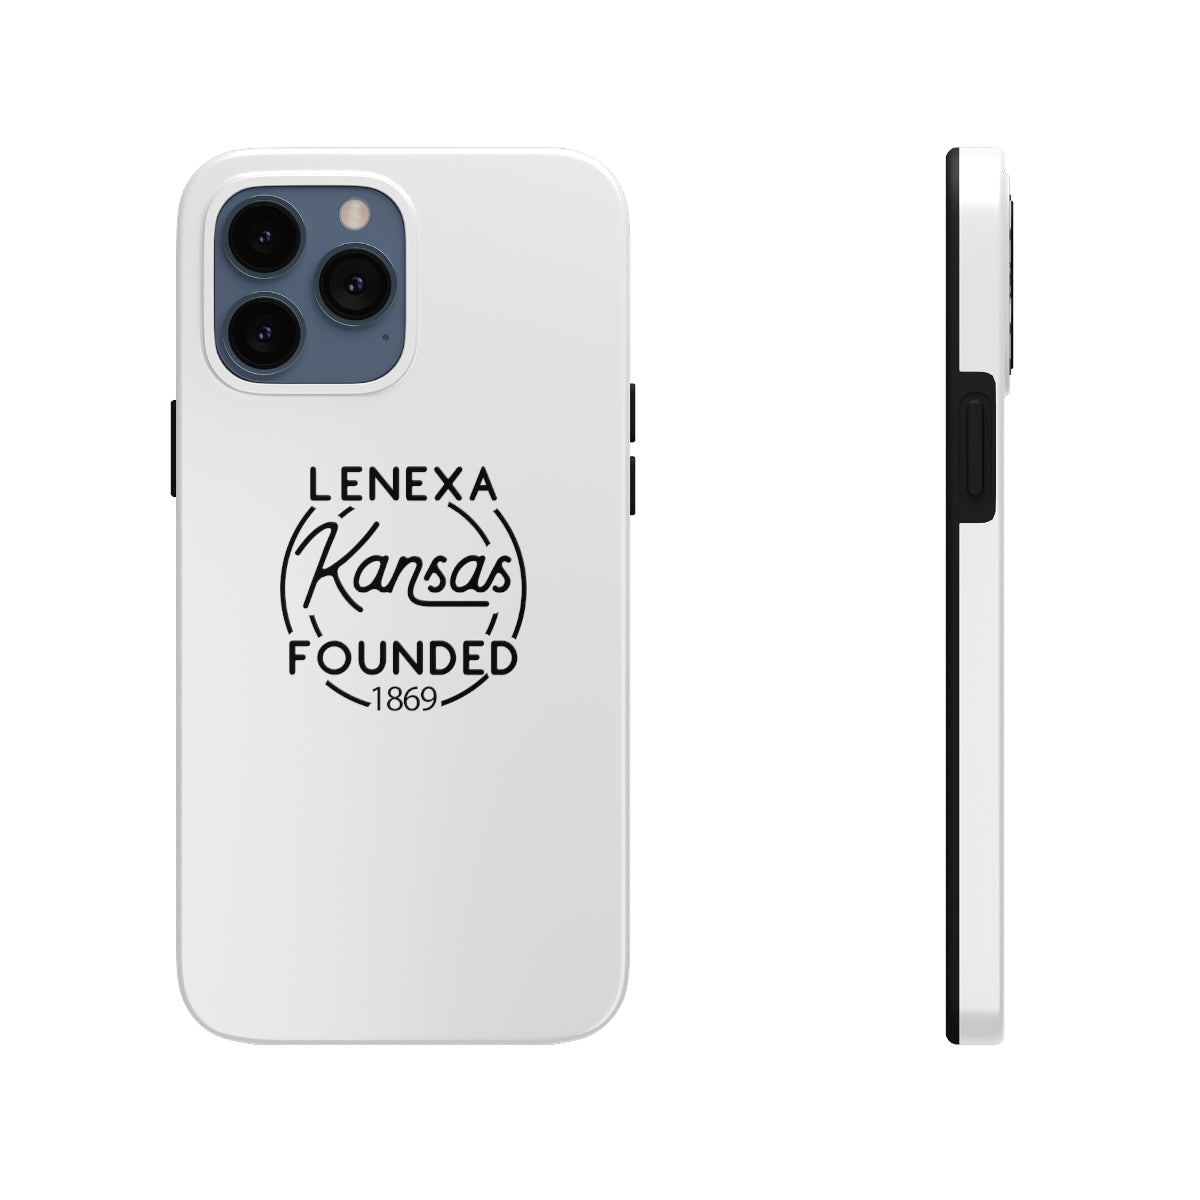 White iphone 13 pro max case for Lenexa, Kansas